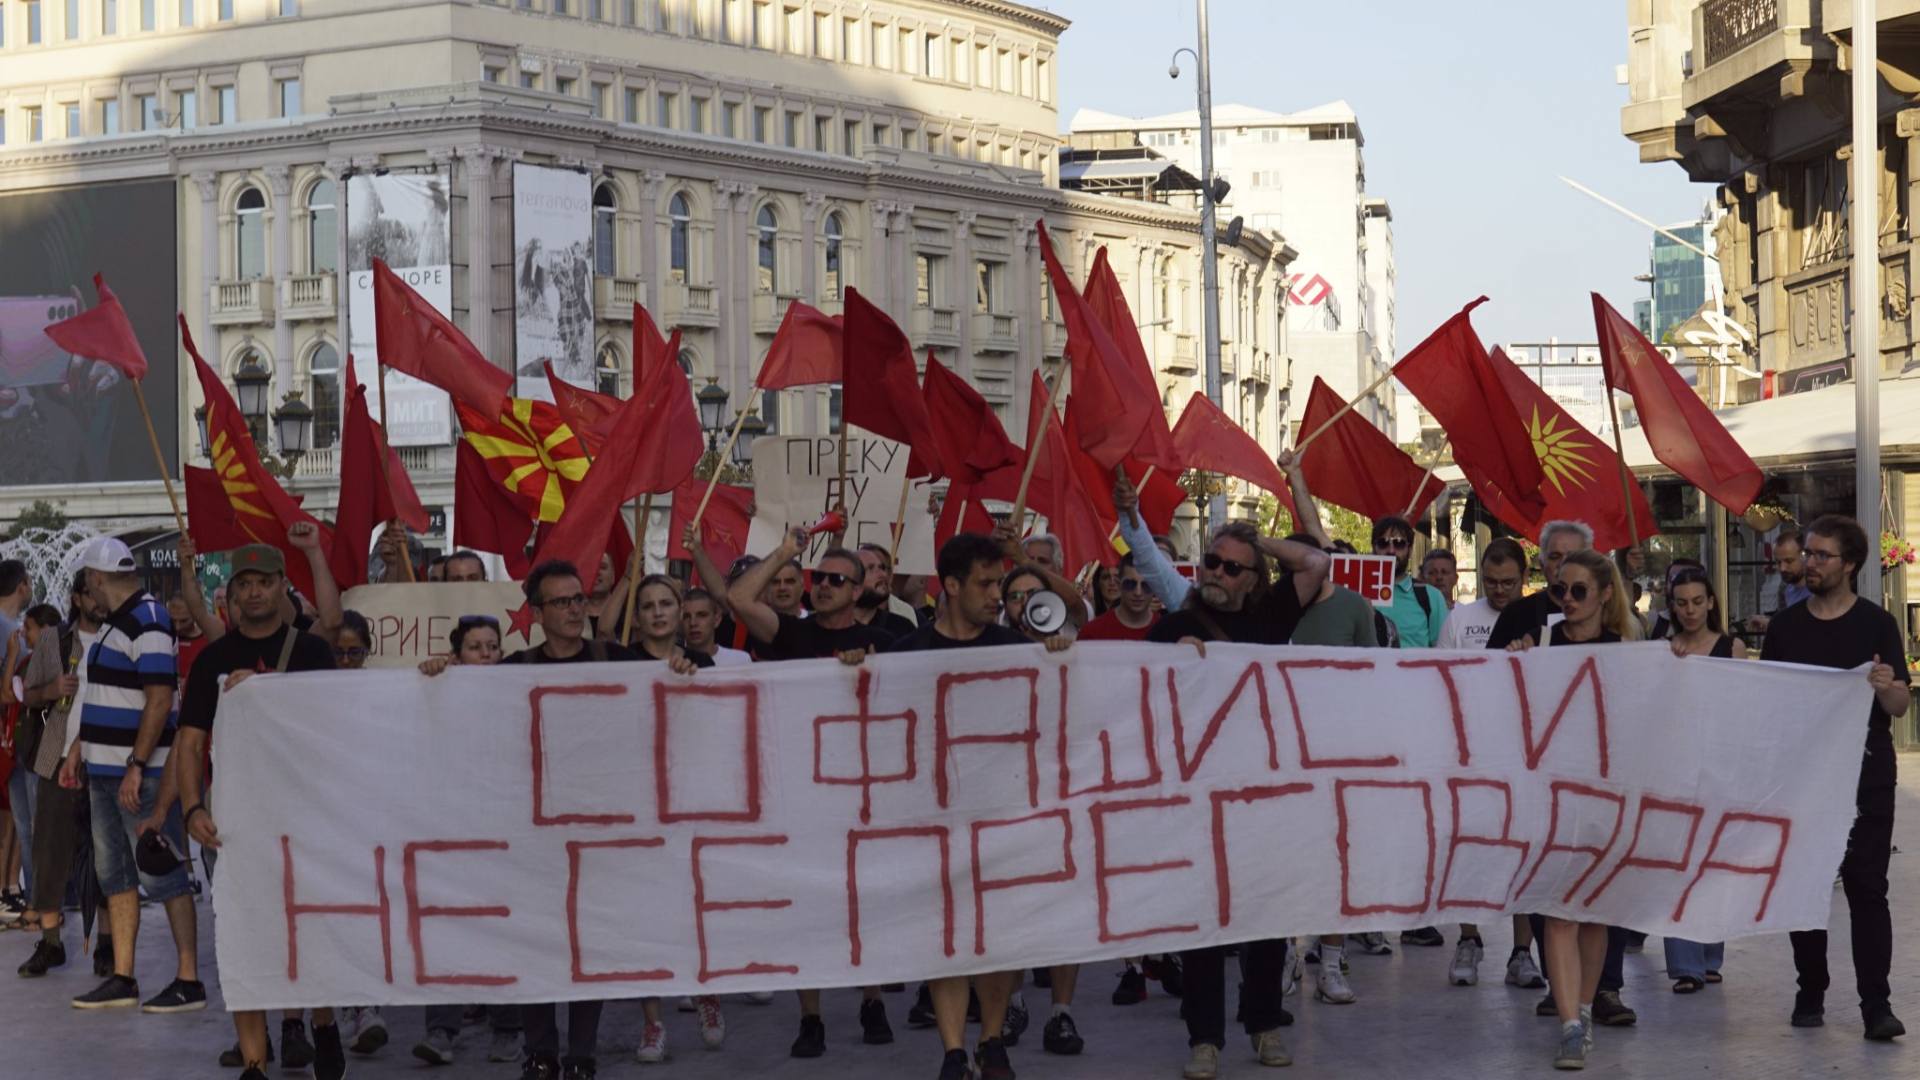 Нашенци от РСМ поискаха защита от България заради тормоз и репресии срещу семействата им